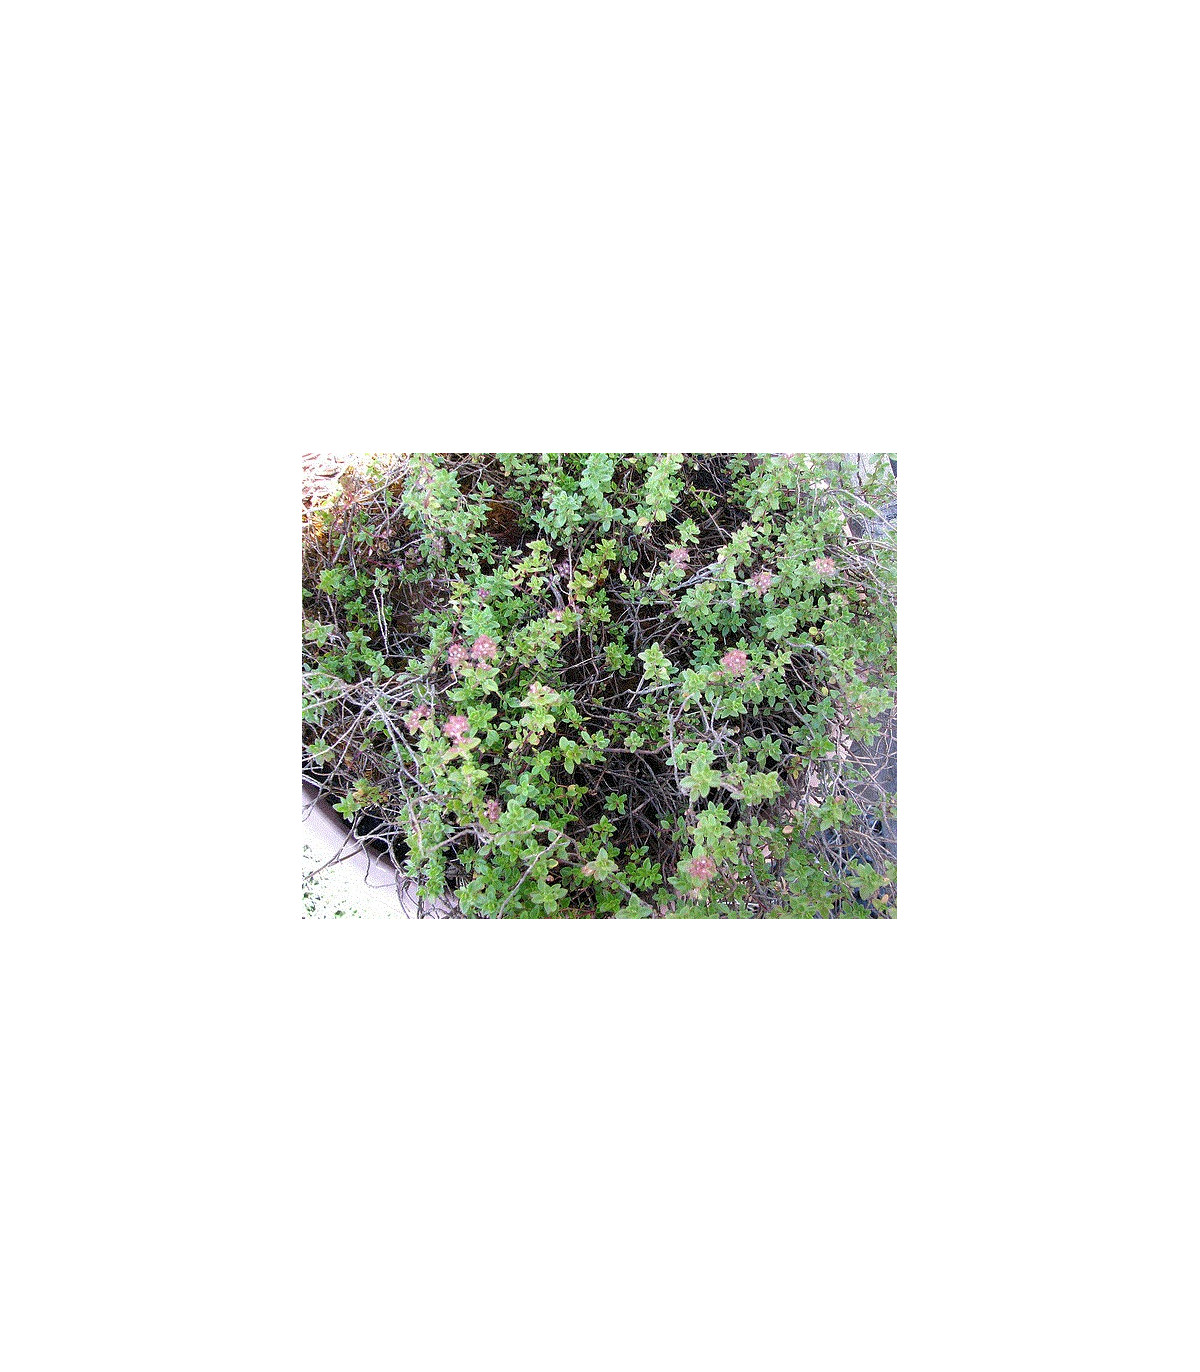 Tymián francúzsky letný - Thymus vulgaris - semiačka - 50 ks